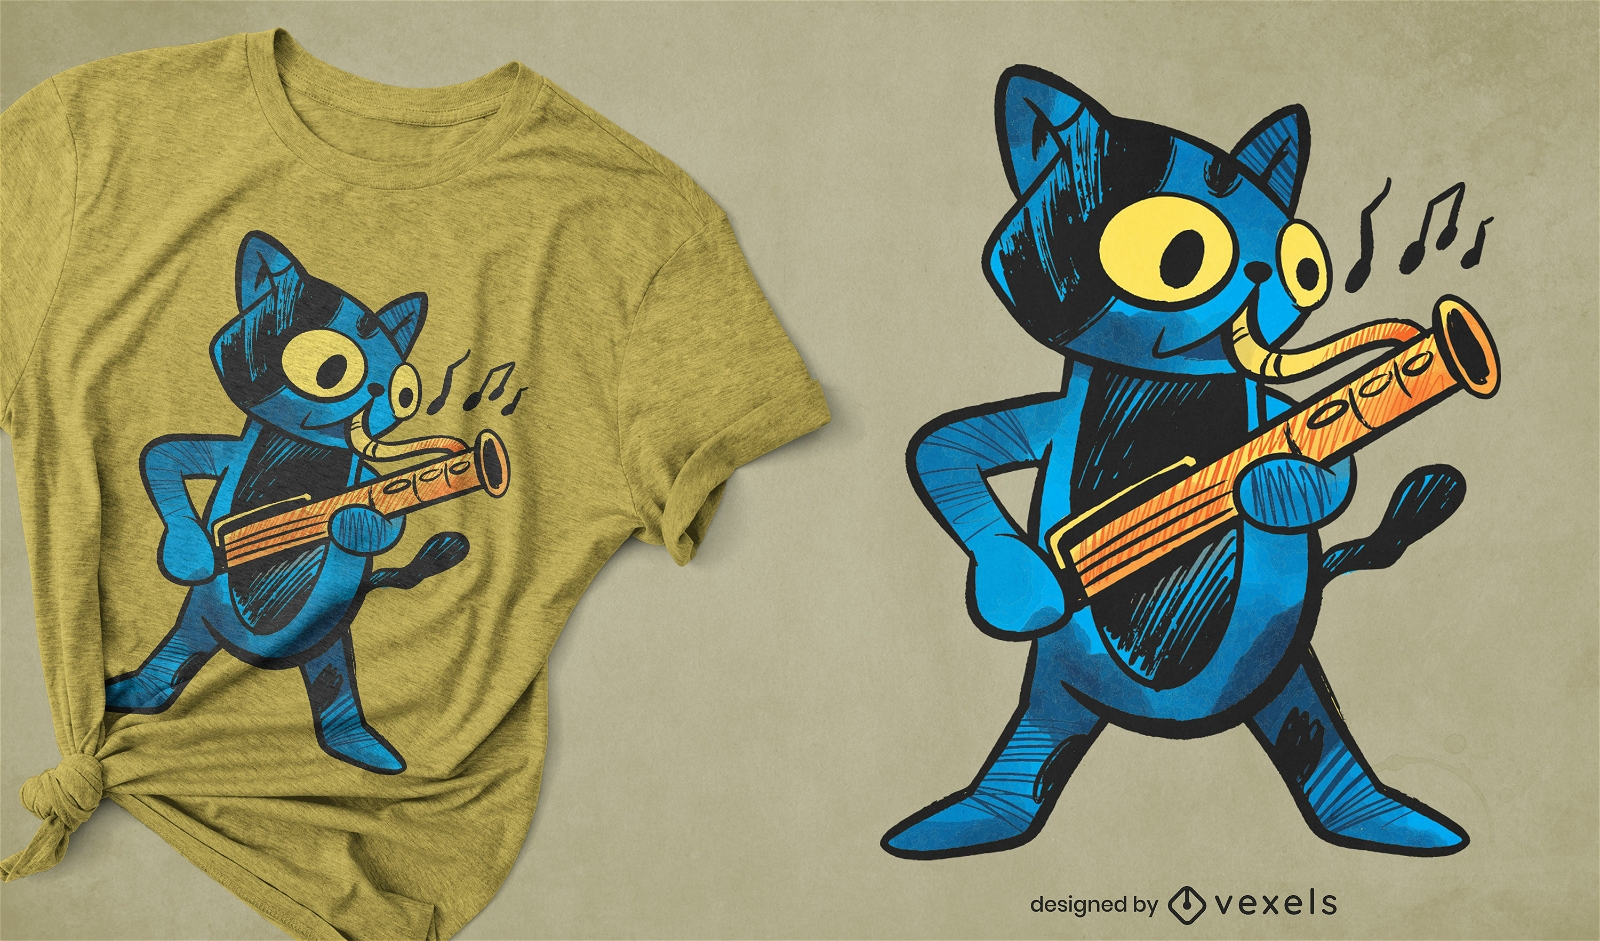 Bassoon cat t-shirt design